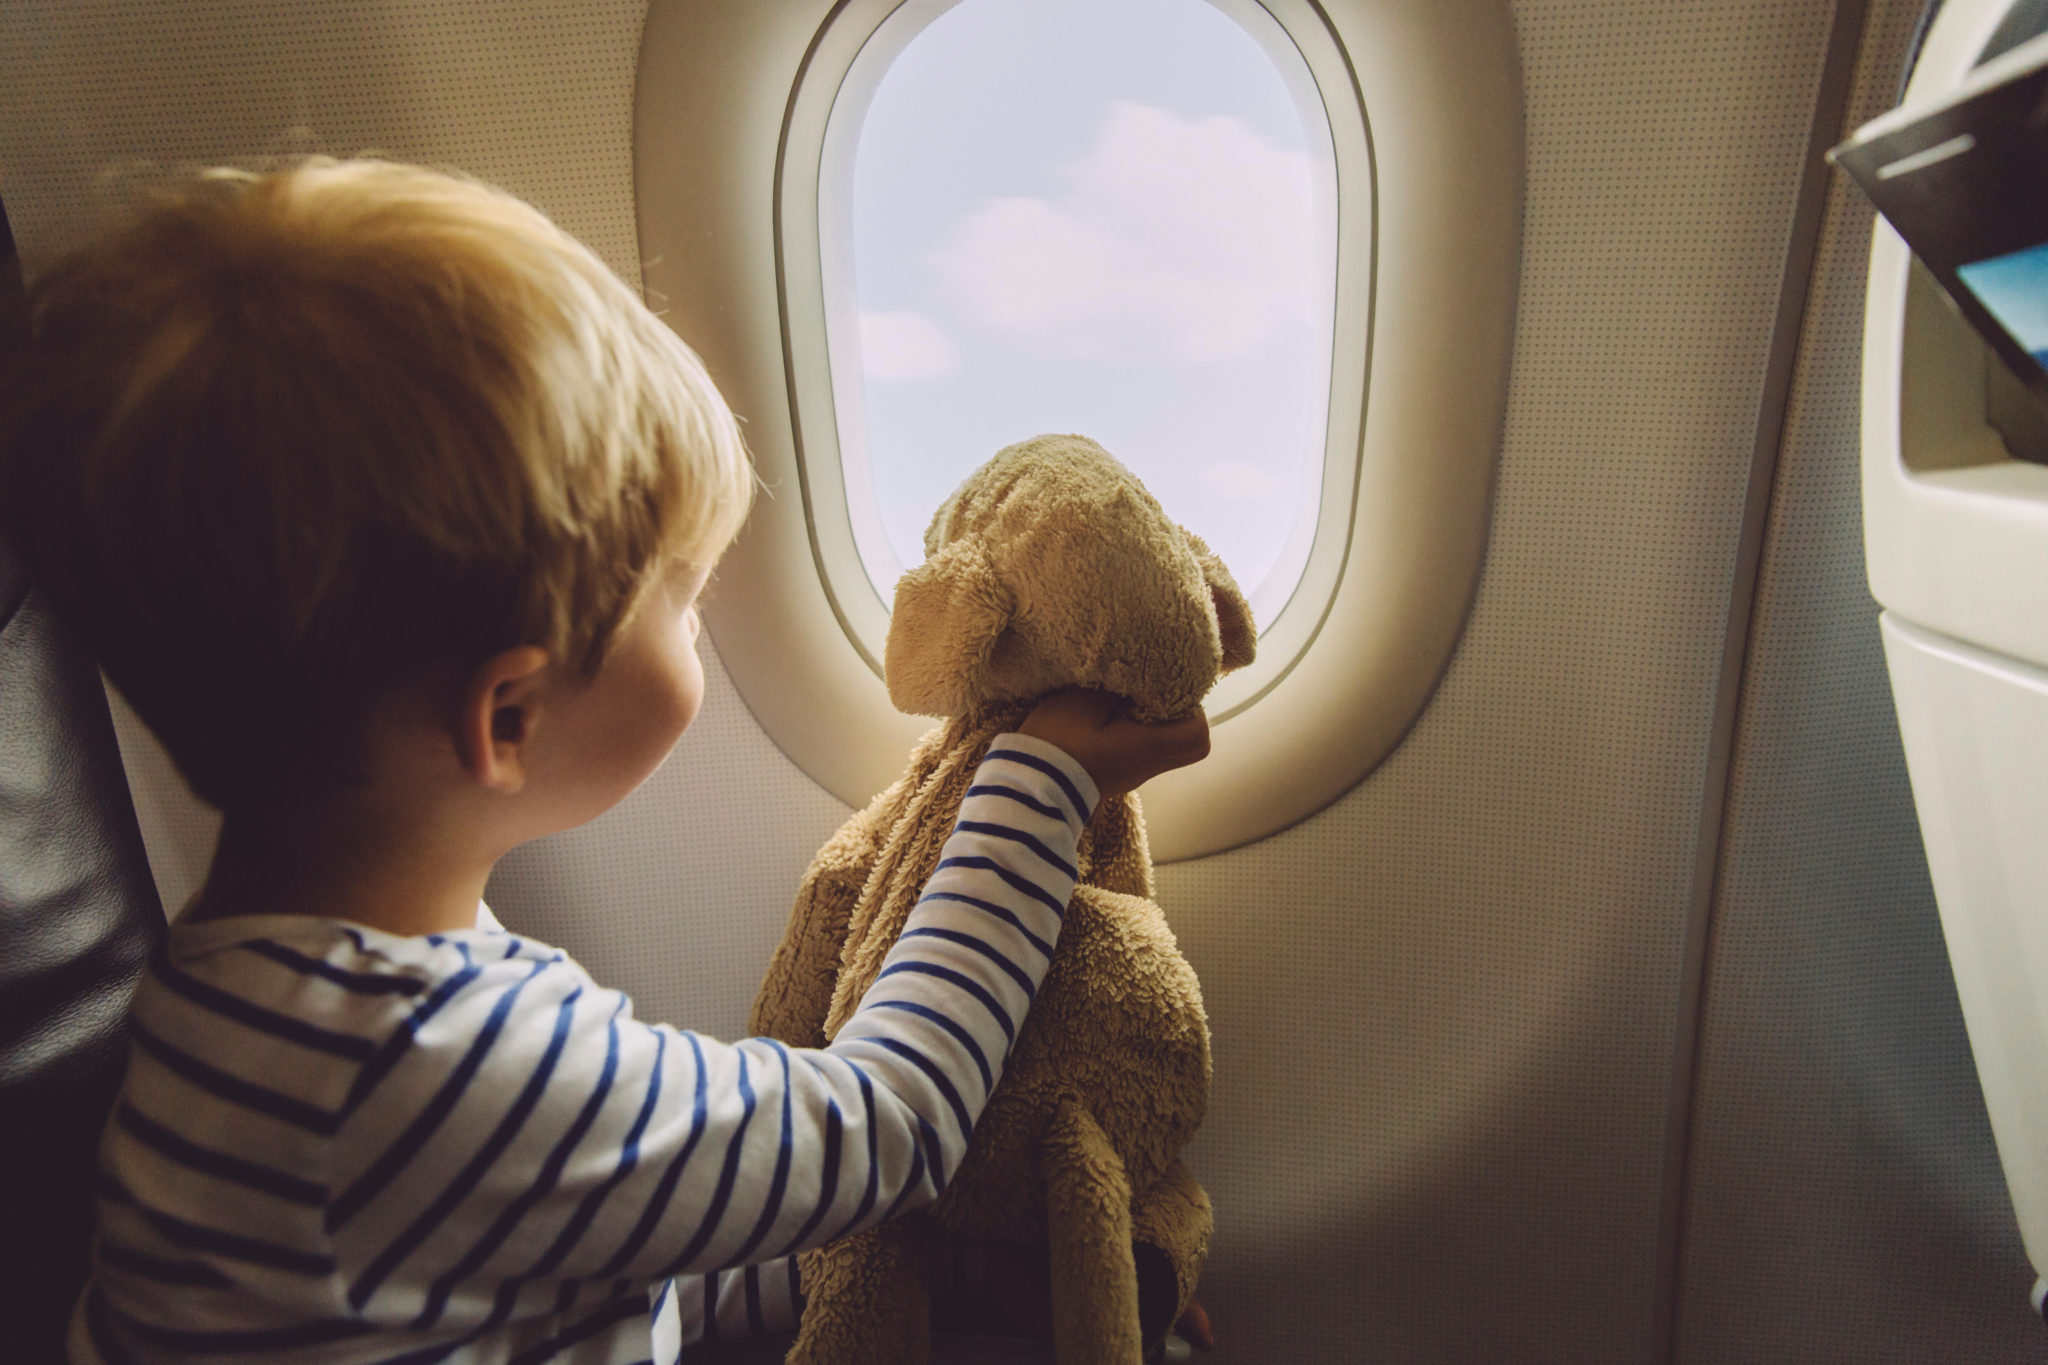 Bagages, poussettes et sièges d'enfant dans l'avion - Conseils